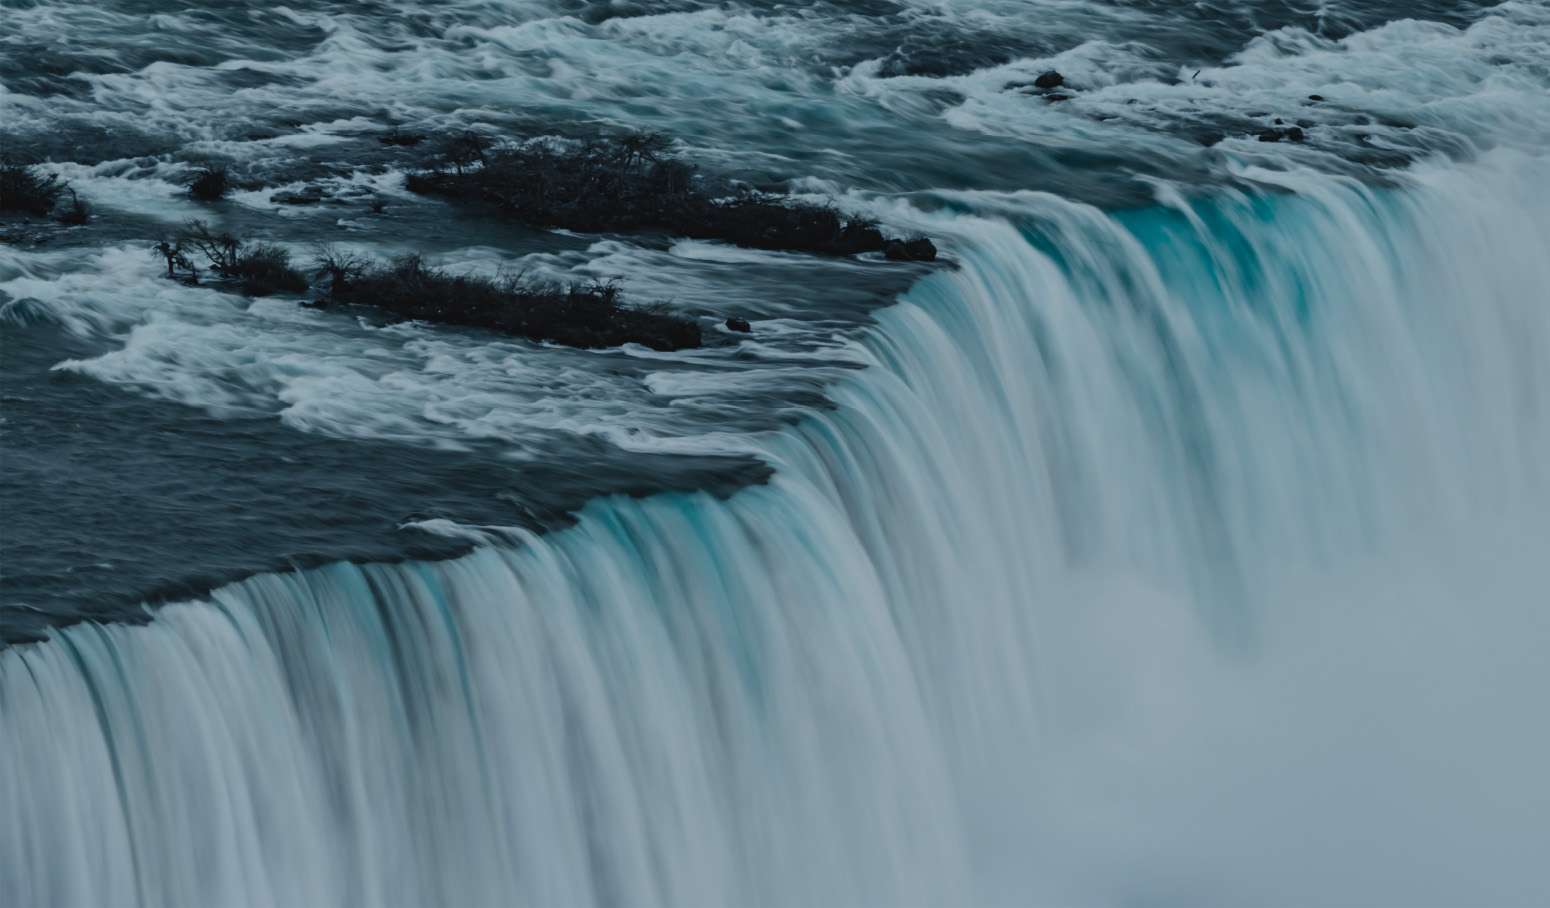 Imagen de cascada de agua de color azul, donde en primer plano el agua rompe al caer desde la altura.